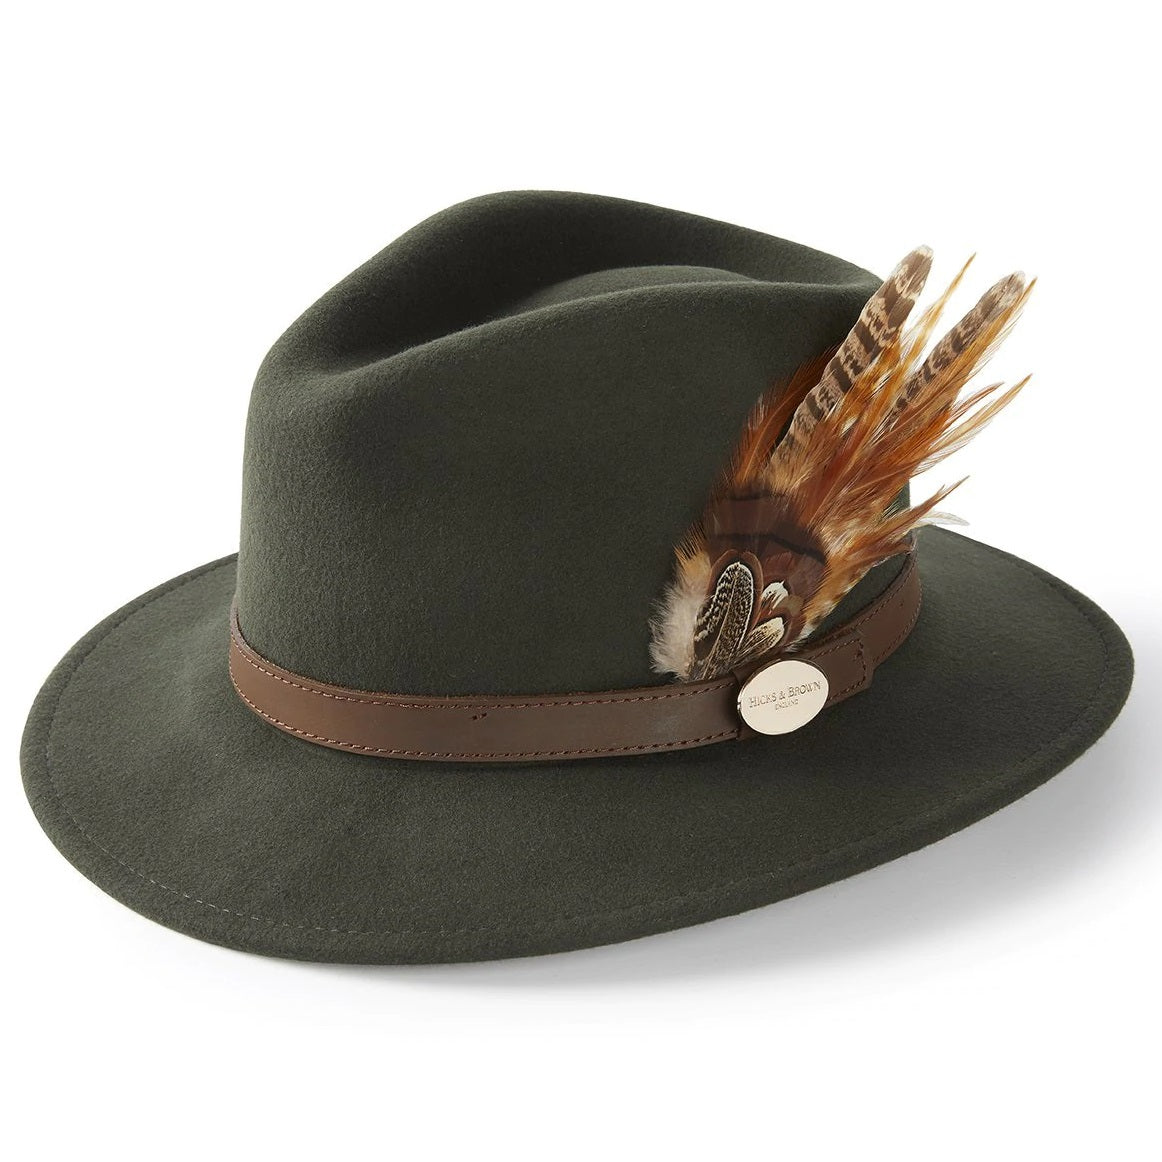 HICKS & BROWN Ladies Suffolk Fedora Hat - Gamebird Feather - Olive